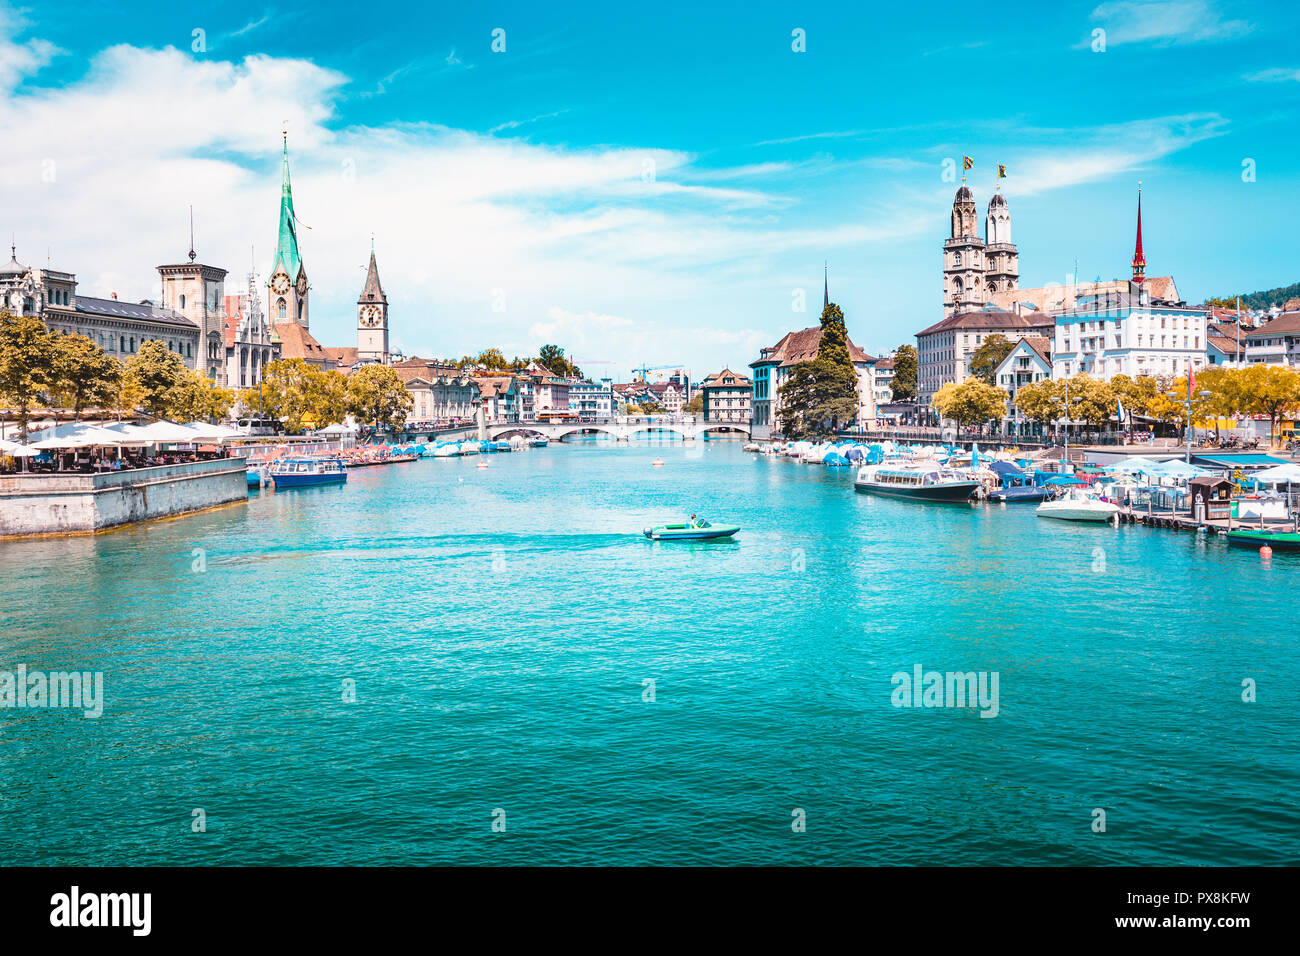 Vista panorámica del centro de la ciudad de Zurich, con iglesias y barcos en el hermoso río Limmat, en verano, en el cantón de Zurich, Suiza Foto de stock